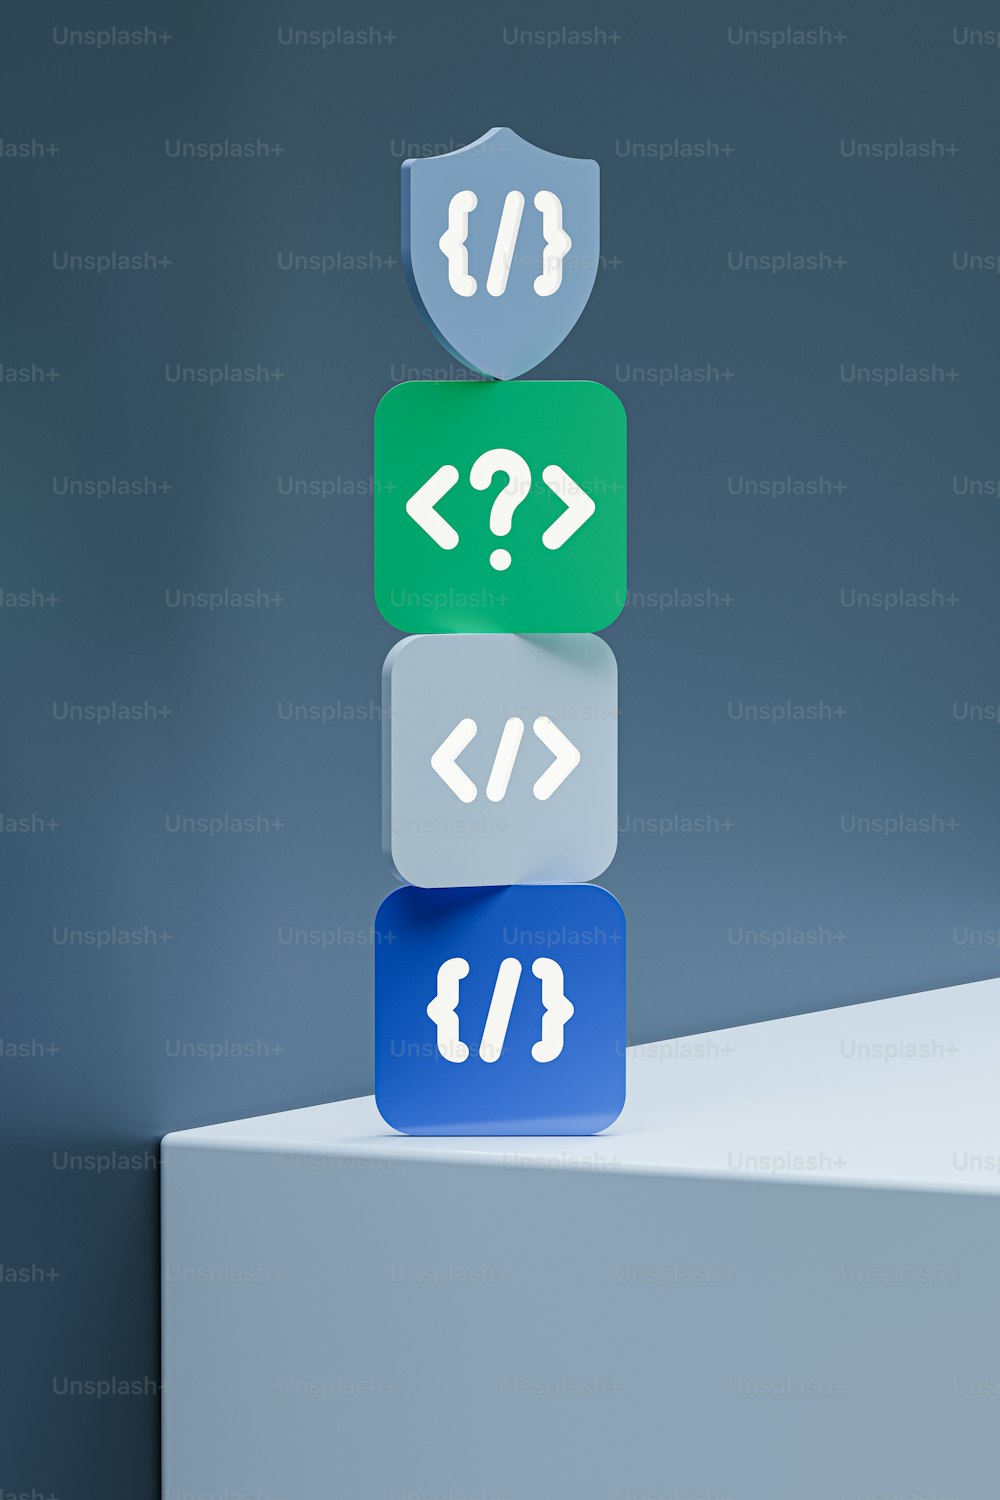 une pile de boutons de différentes couleurs avec des symboles dessus